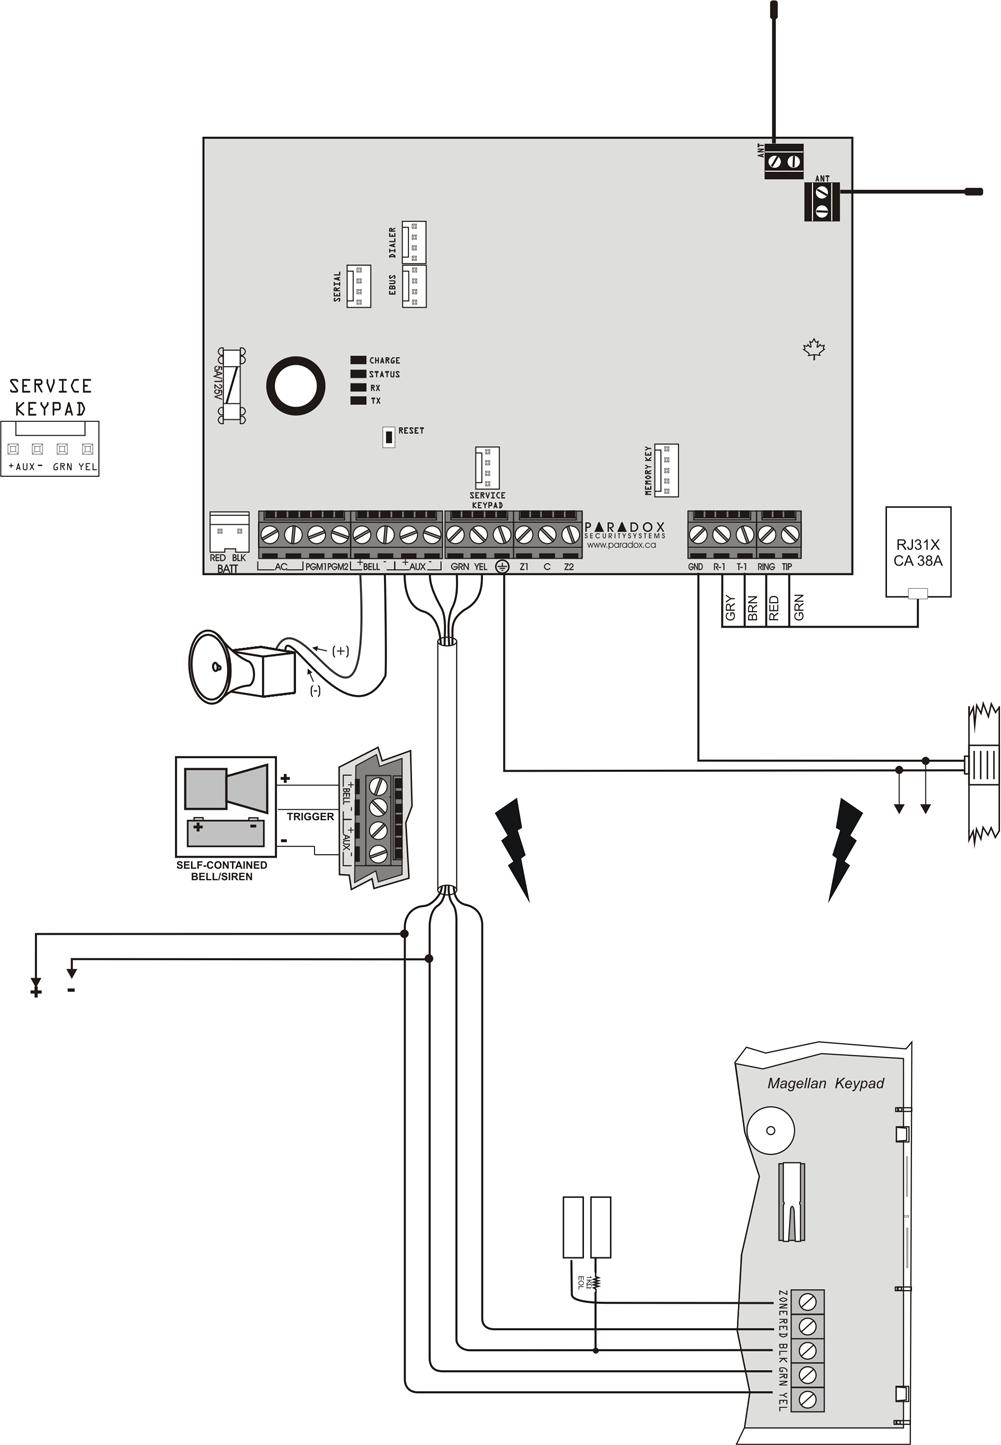 2.5 MG5000 PCB vázlat Helyszíni firmware frissítésre, 306USB interfészen keresztül. Winloadhoz csatlakoztatás részleteit, lásd 57. oldal.